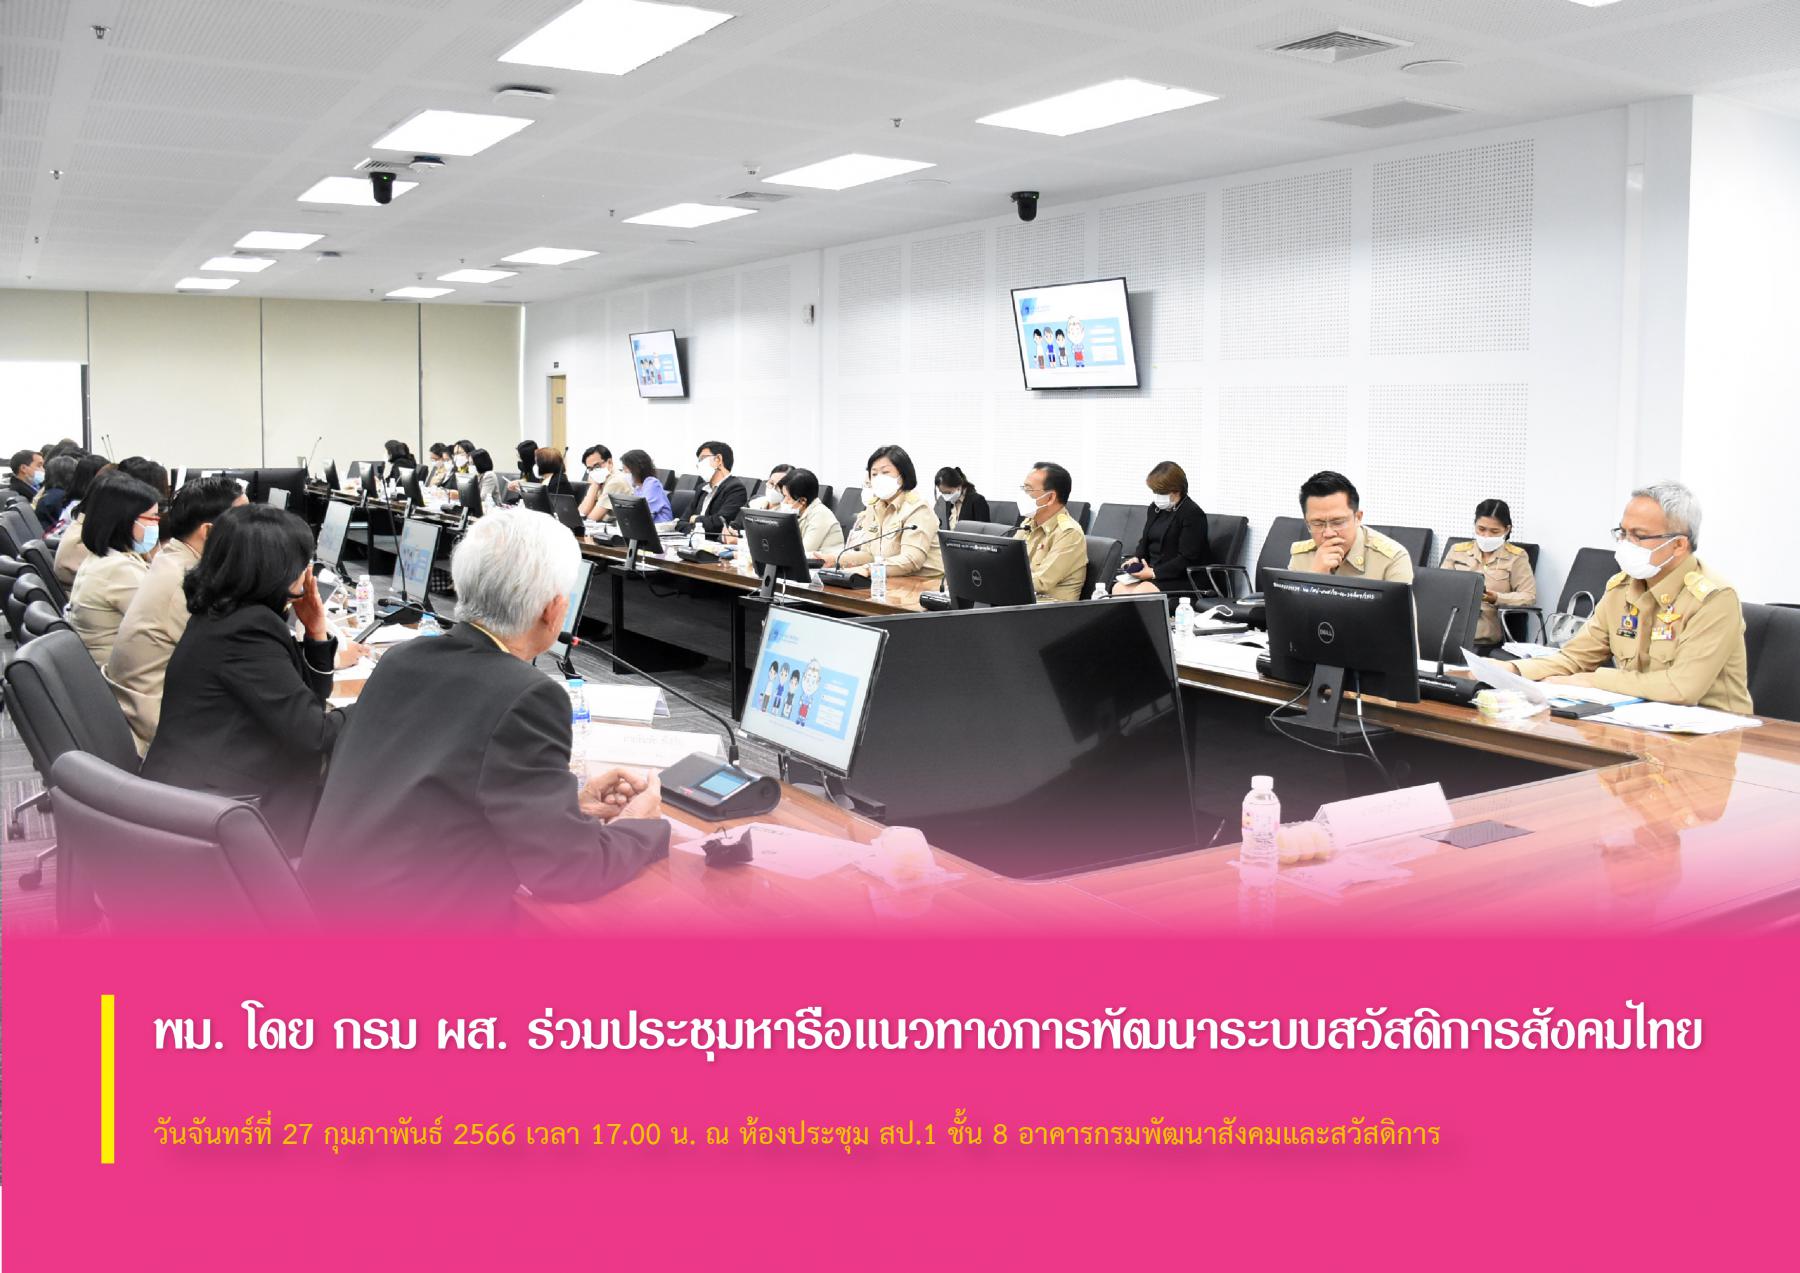 พม. โดย กรม ผส. ร่วมประชุมหารือแนวทางการพัฒนาระบบสวัสดิการสังคมไทย